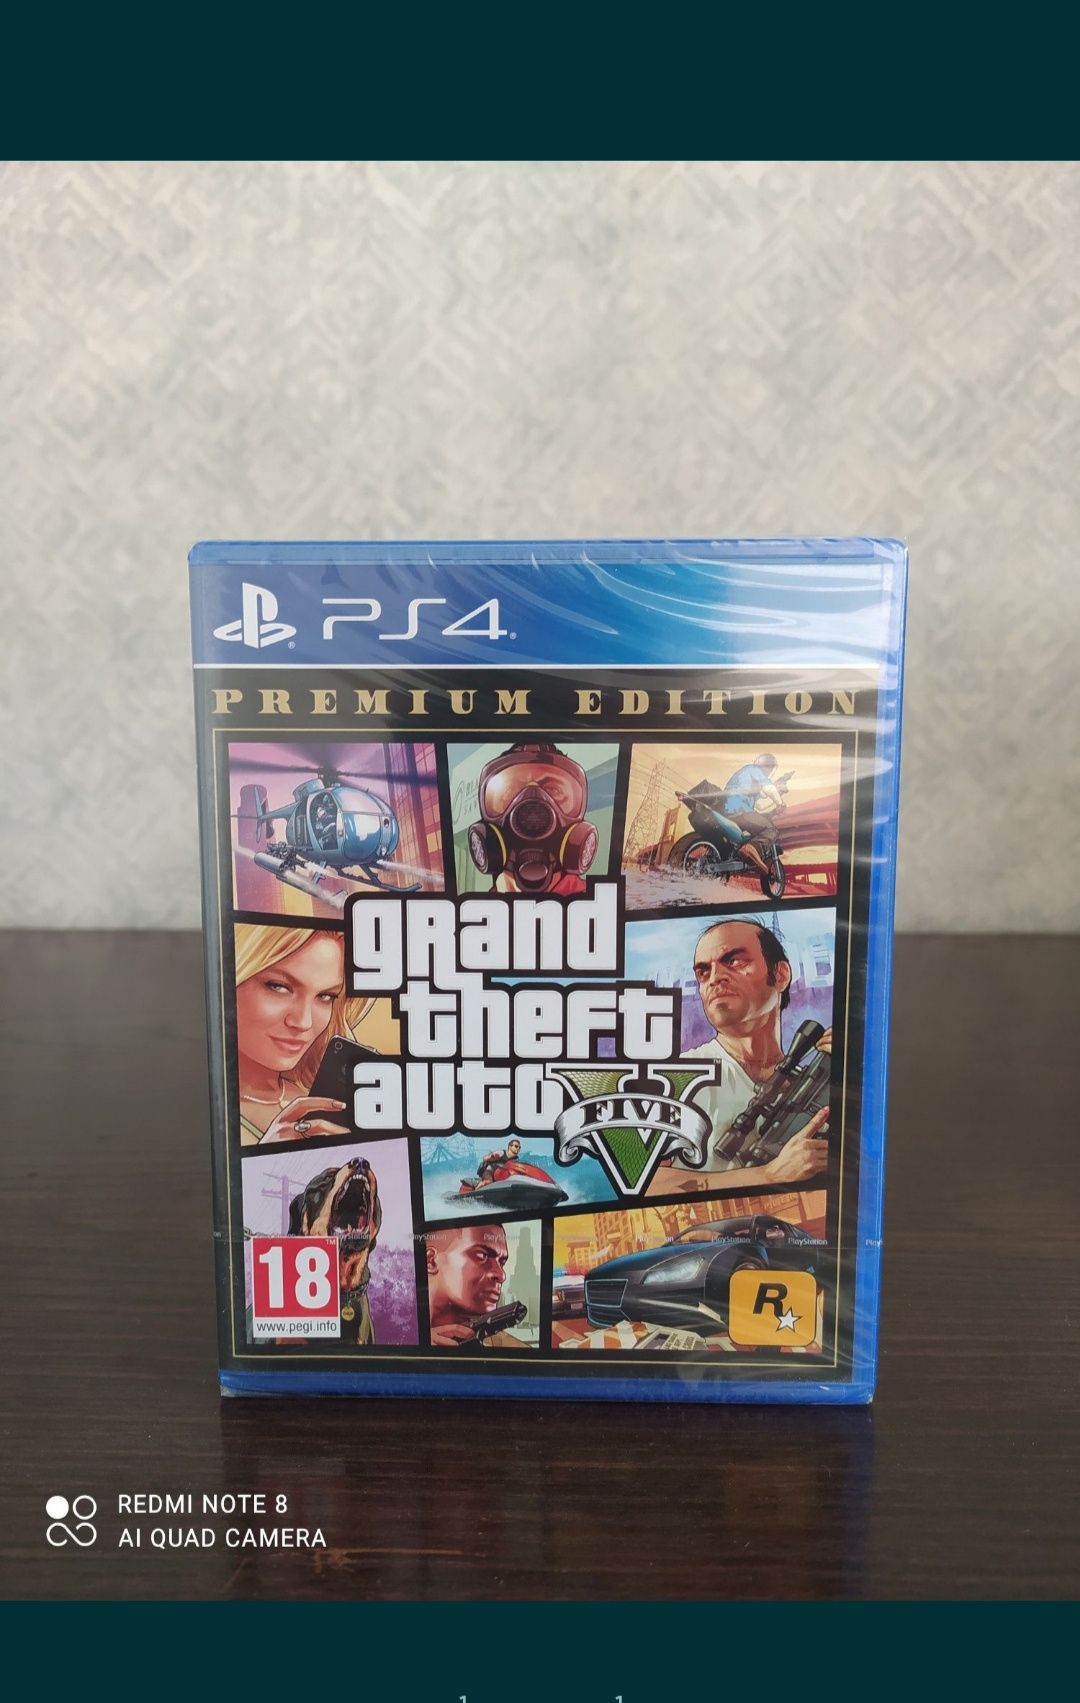 Продам игру GTA V Premium (русский язык) на диске для PS4 и PS5

полно